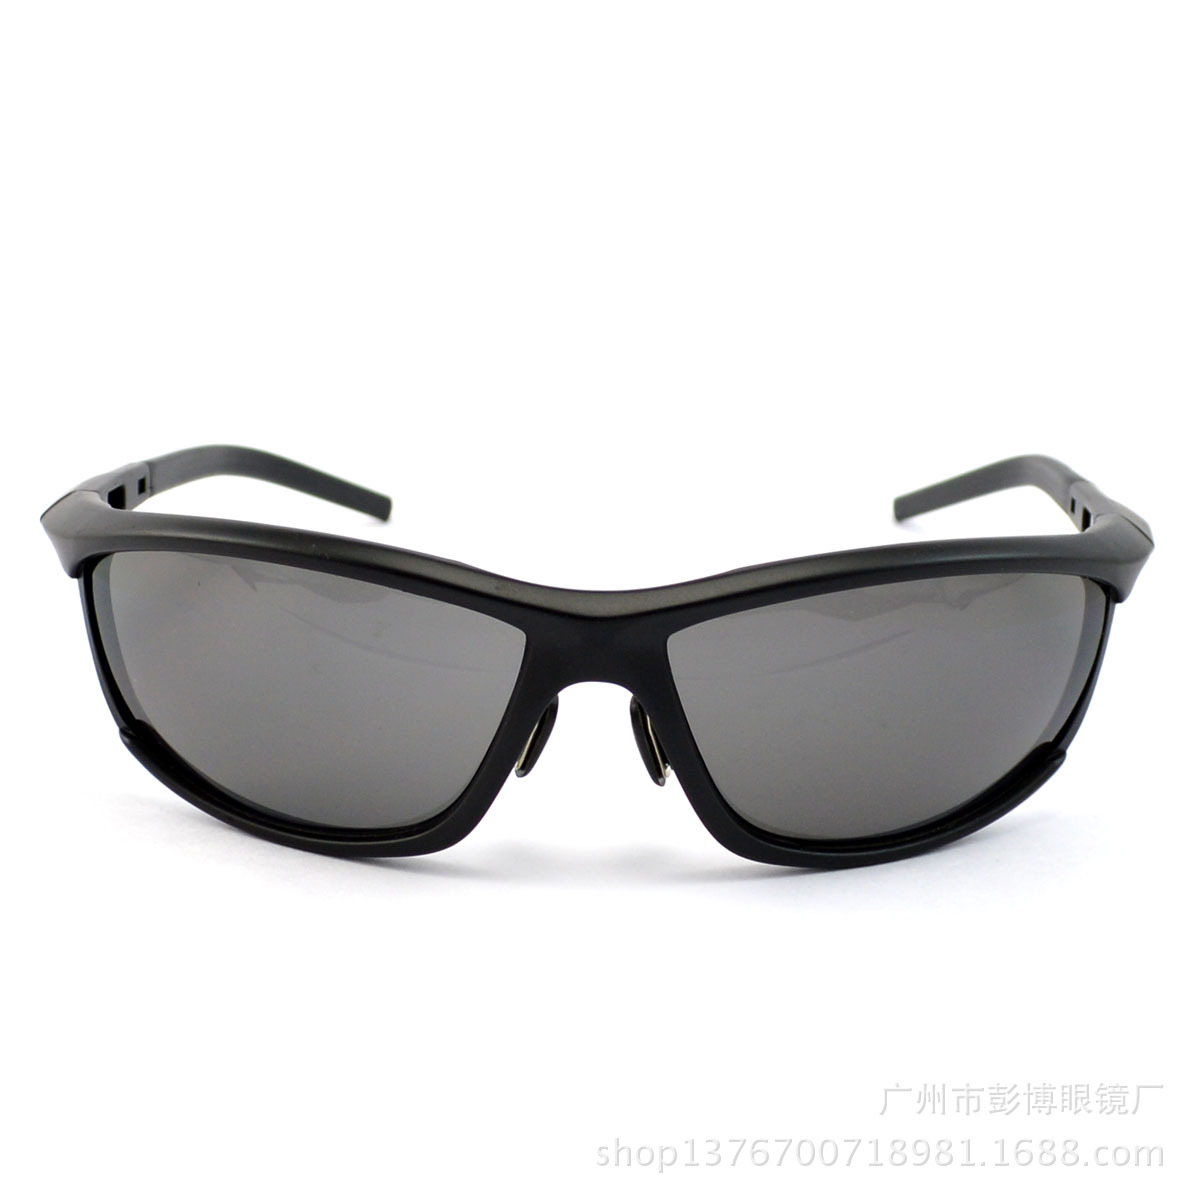 【【供应】新款超酷时尚运动太阳眼镜 男士户